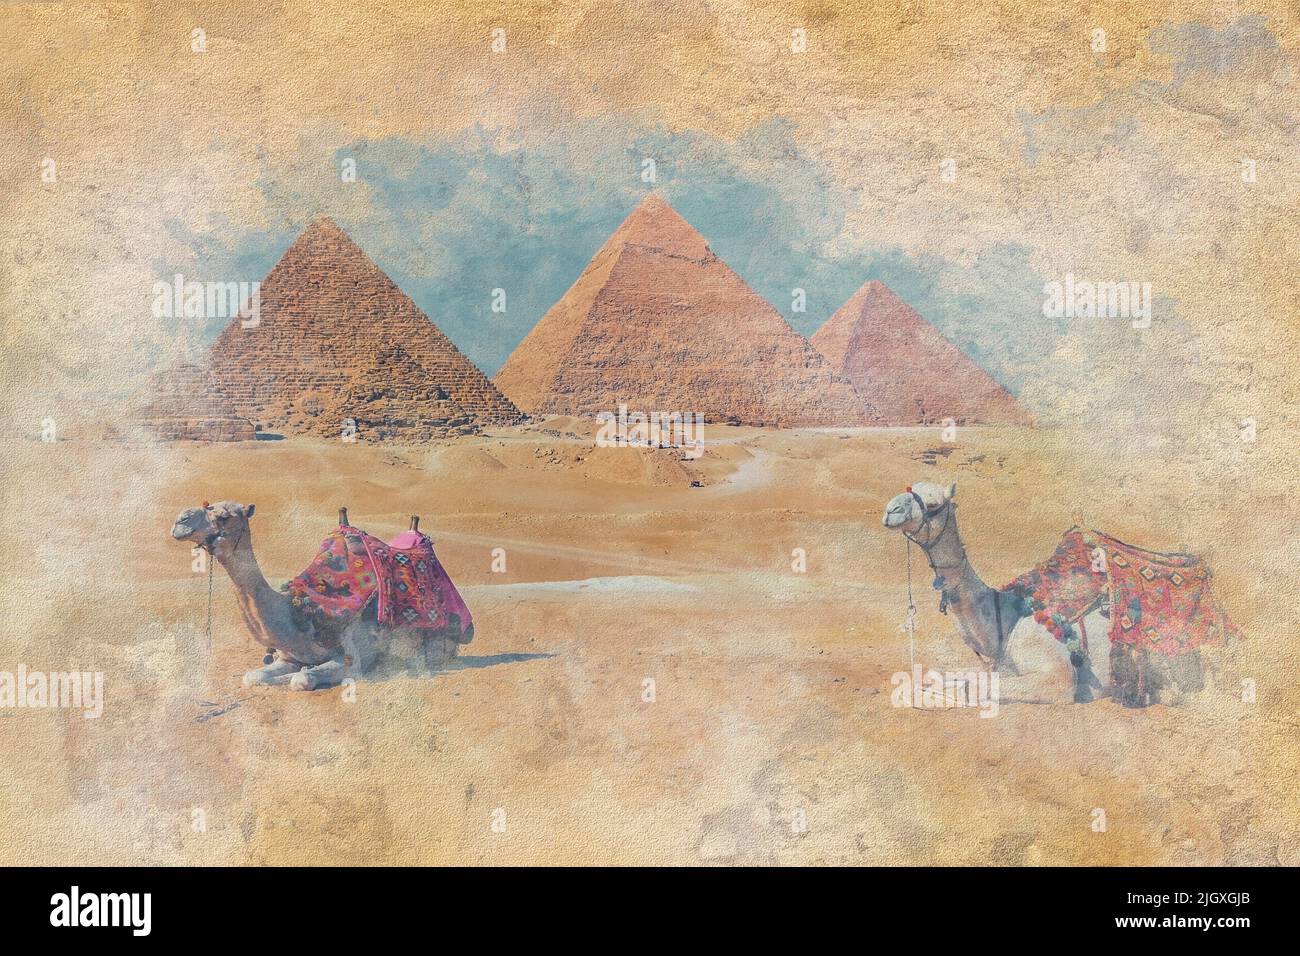 Die Pyramiden von Gizeh in Ägypten - Aquarell Effekt Illustration Stockfoto